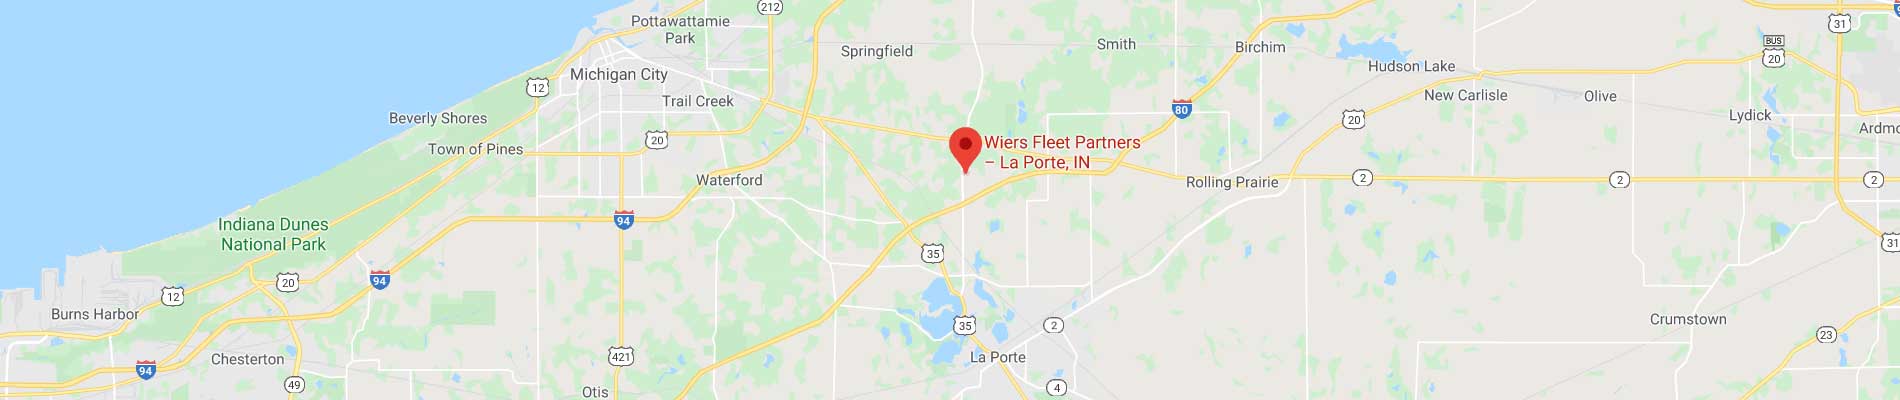 map location for Wiers fleet partners la porte, in